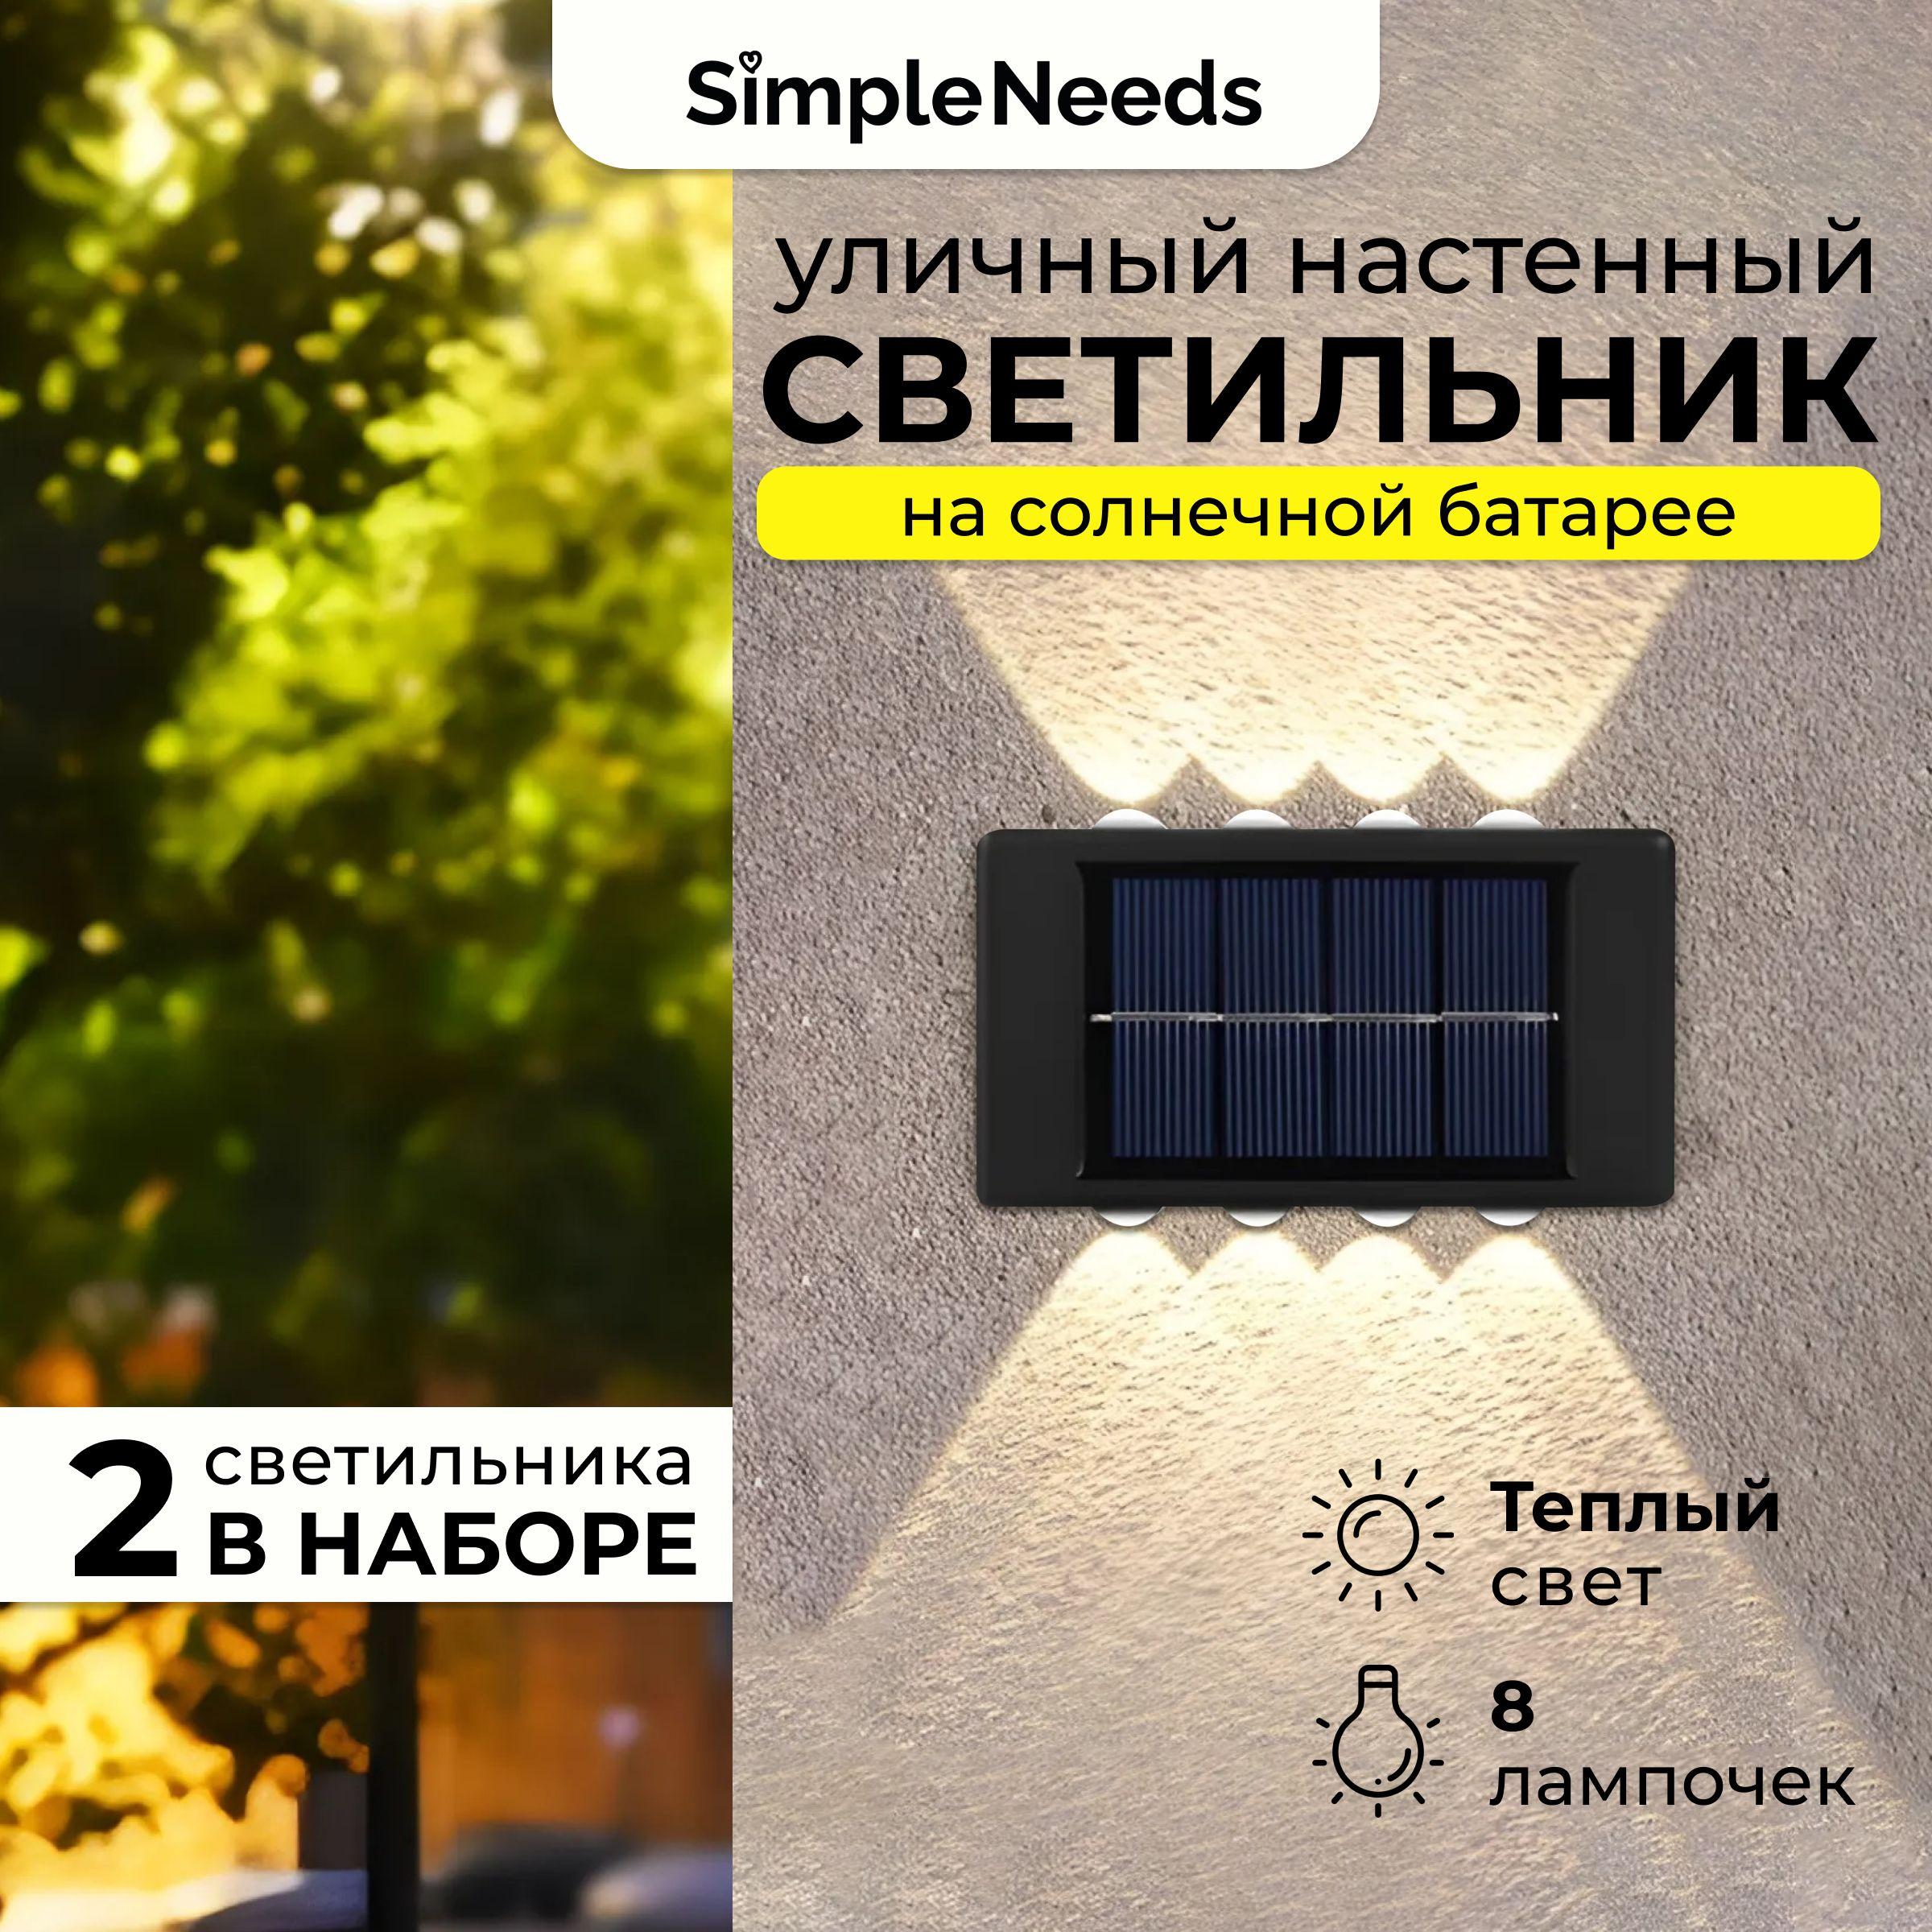 Светильник на солнечной батарее уличный, настенный на солнечной батарее 8 ламп, в наборе 2 шт